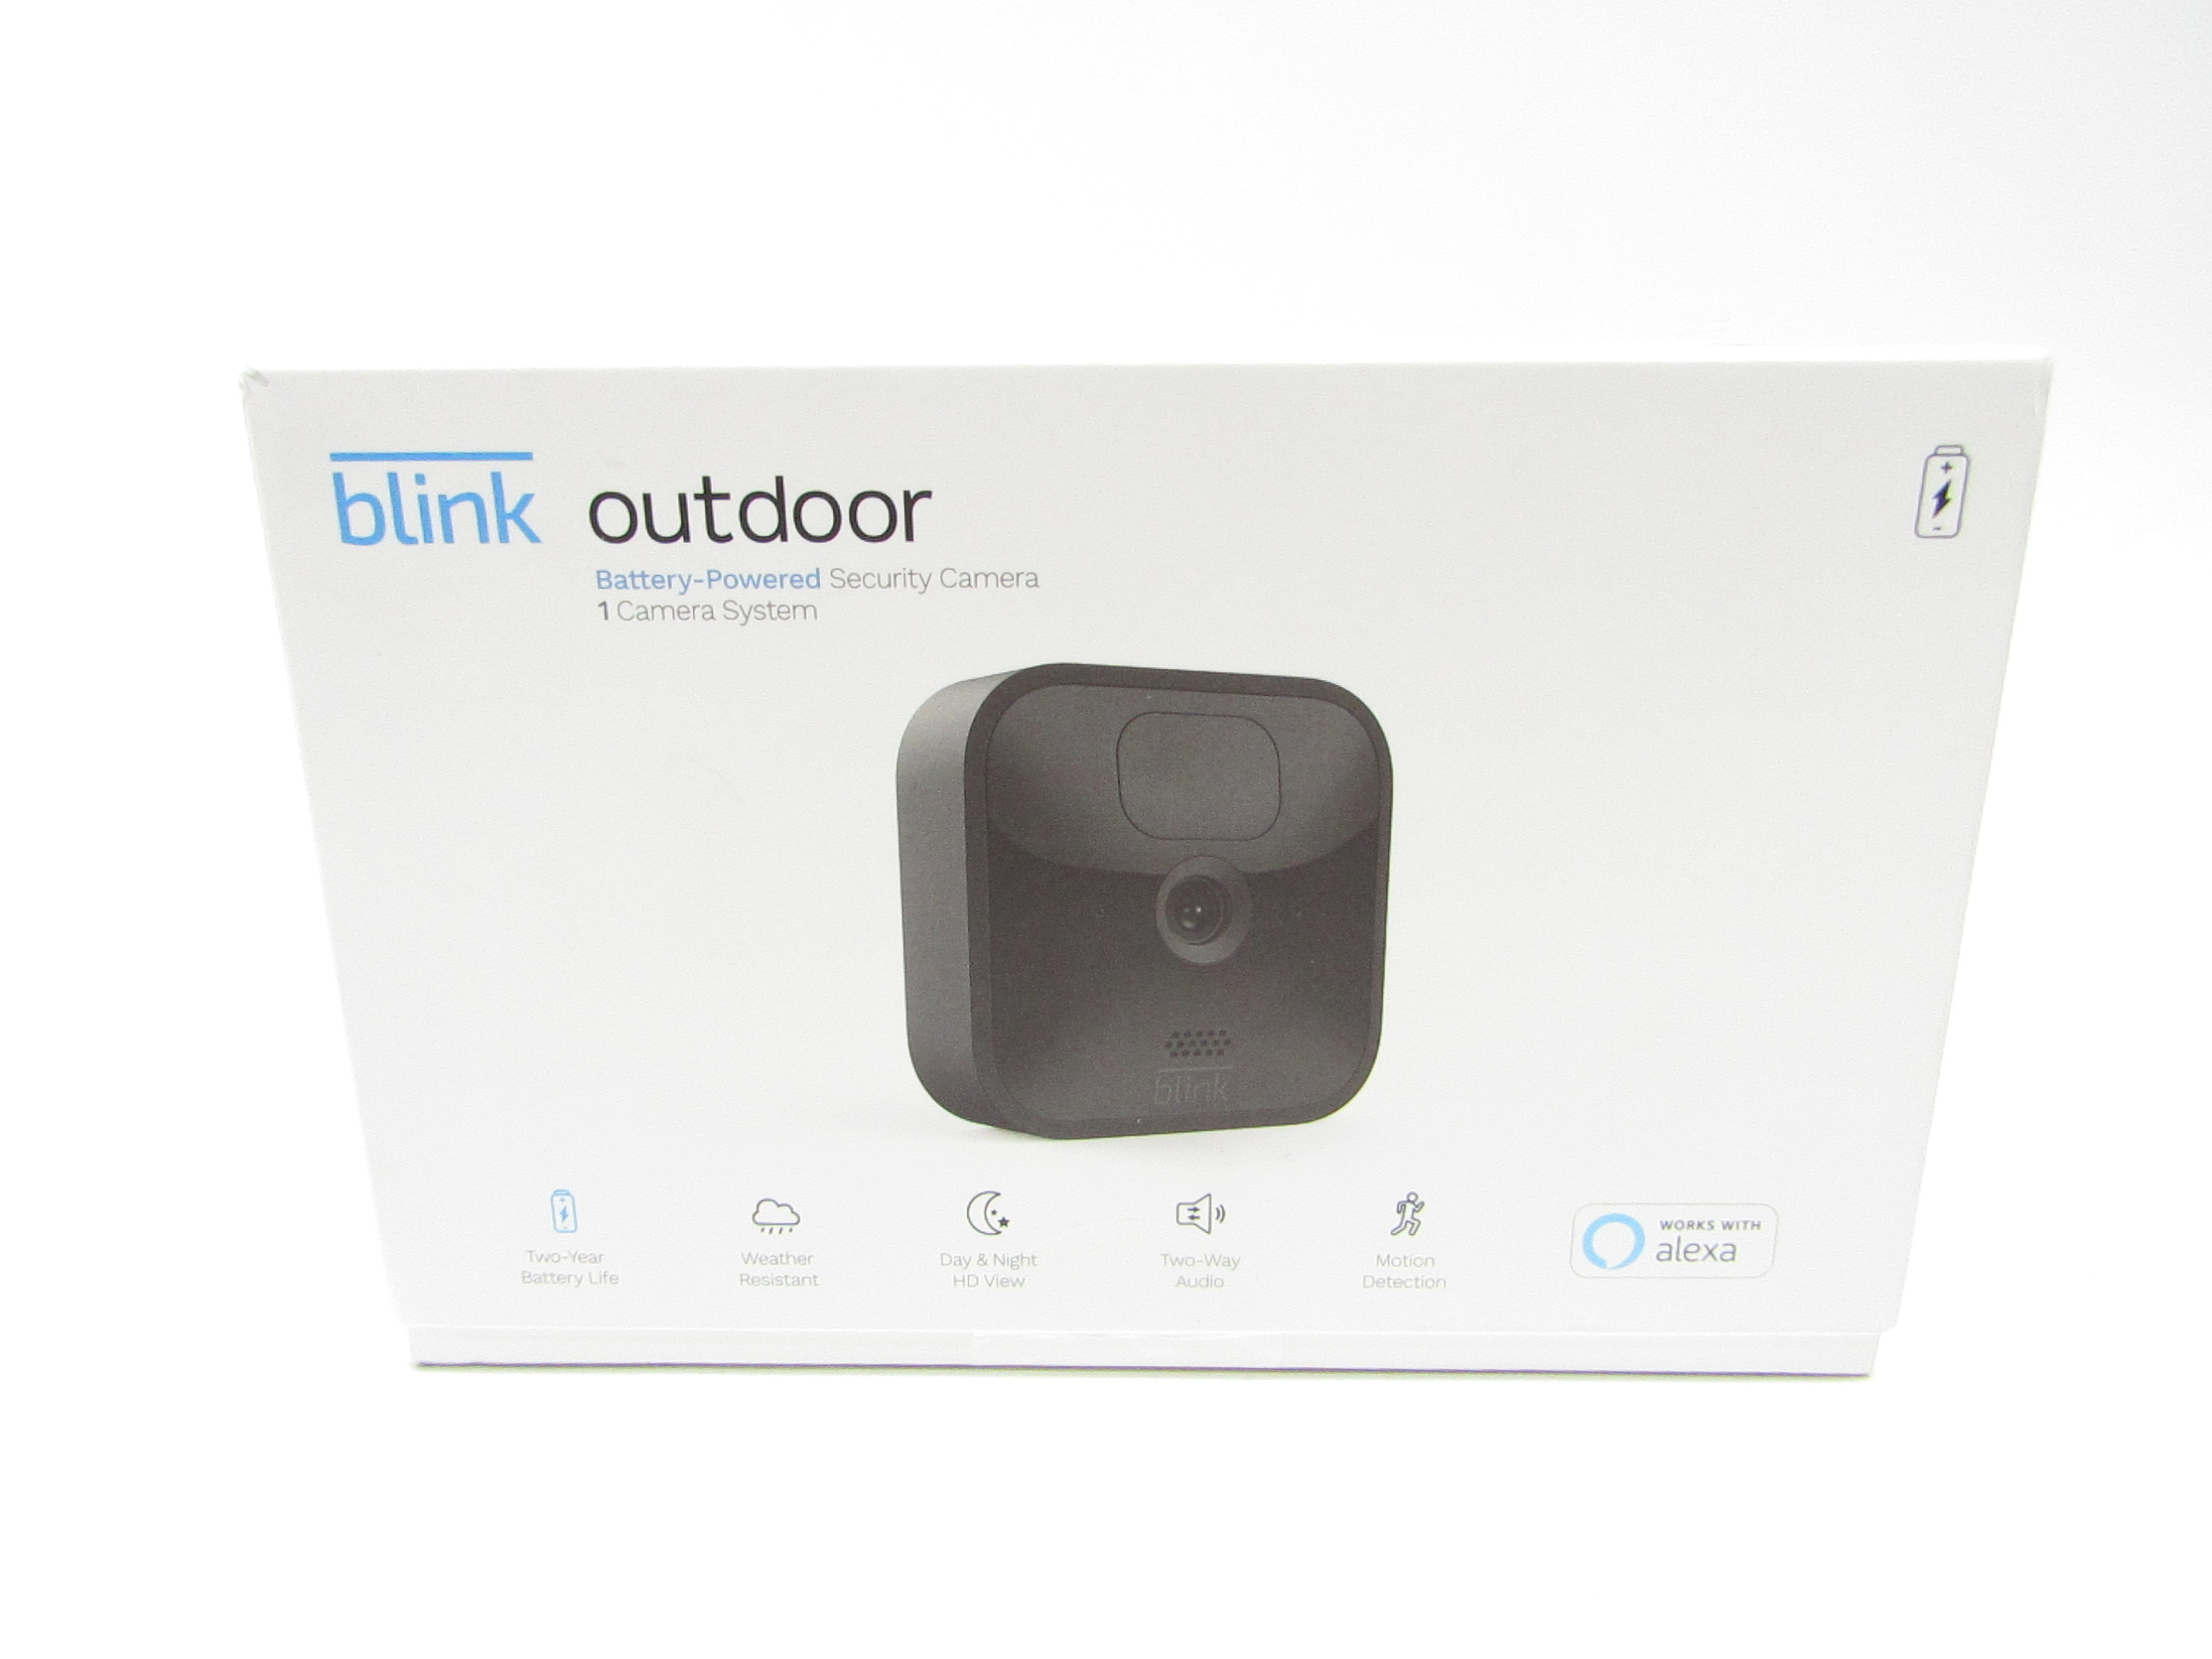 Blink Outdoor and Indoor (3rd Gen) technical specifications